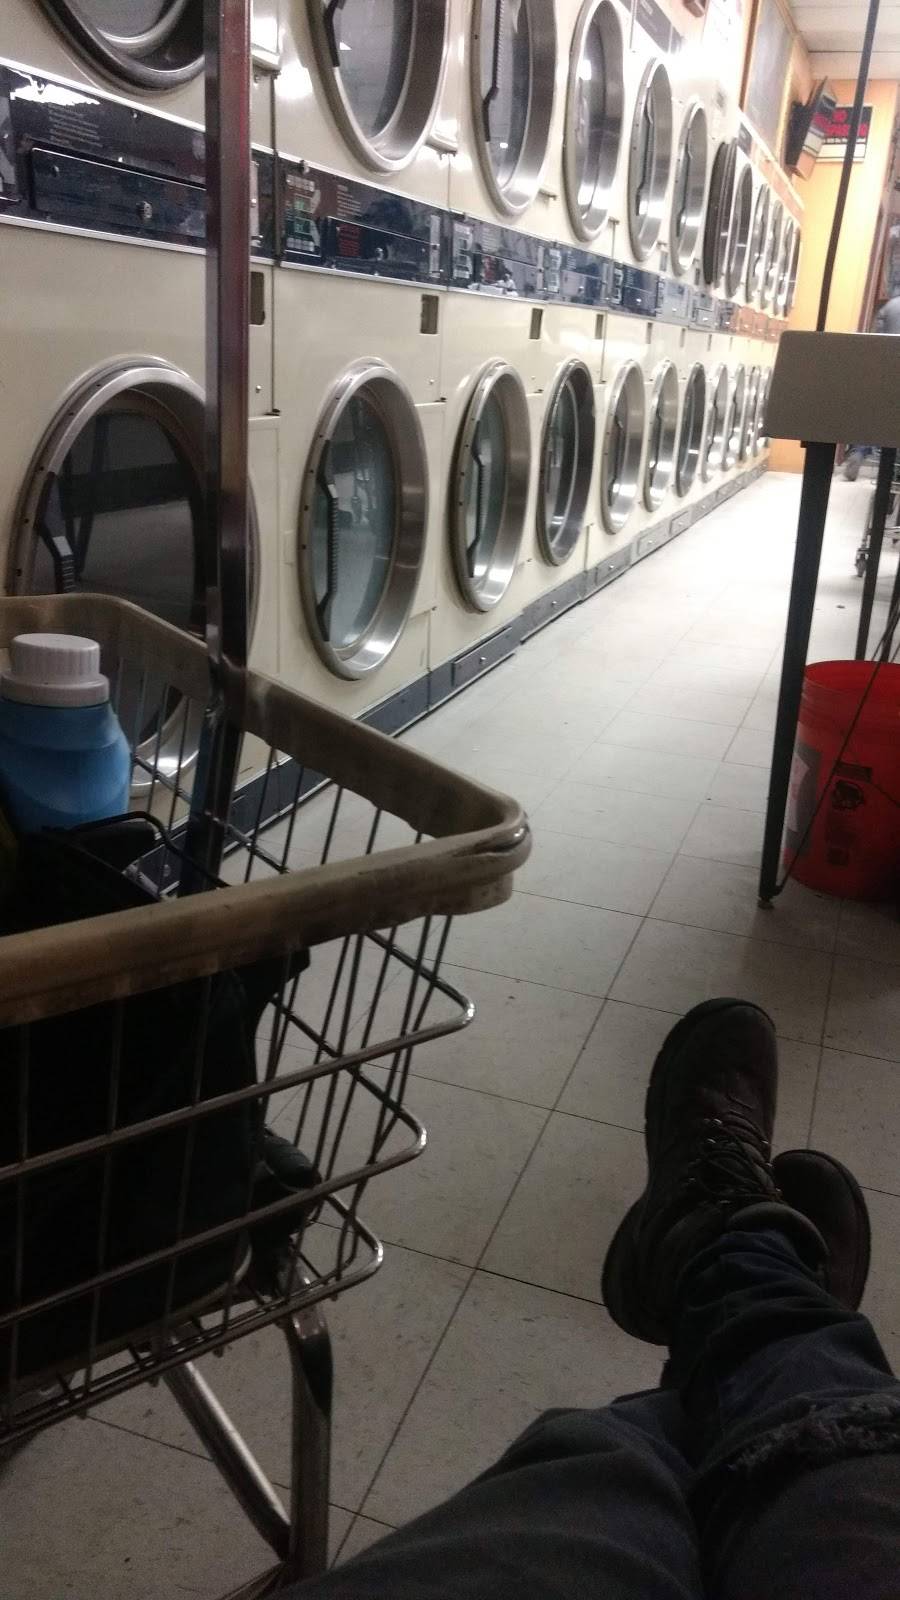 Apsara Laundromat | 5795 E 63rd Pl, Commerce City, CO 80022, USA | Phone: (303) 288-4085